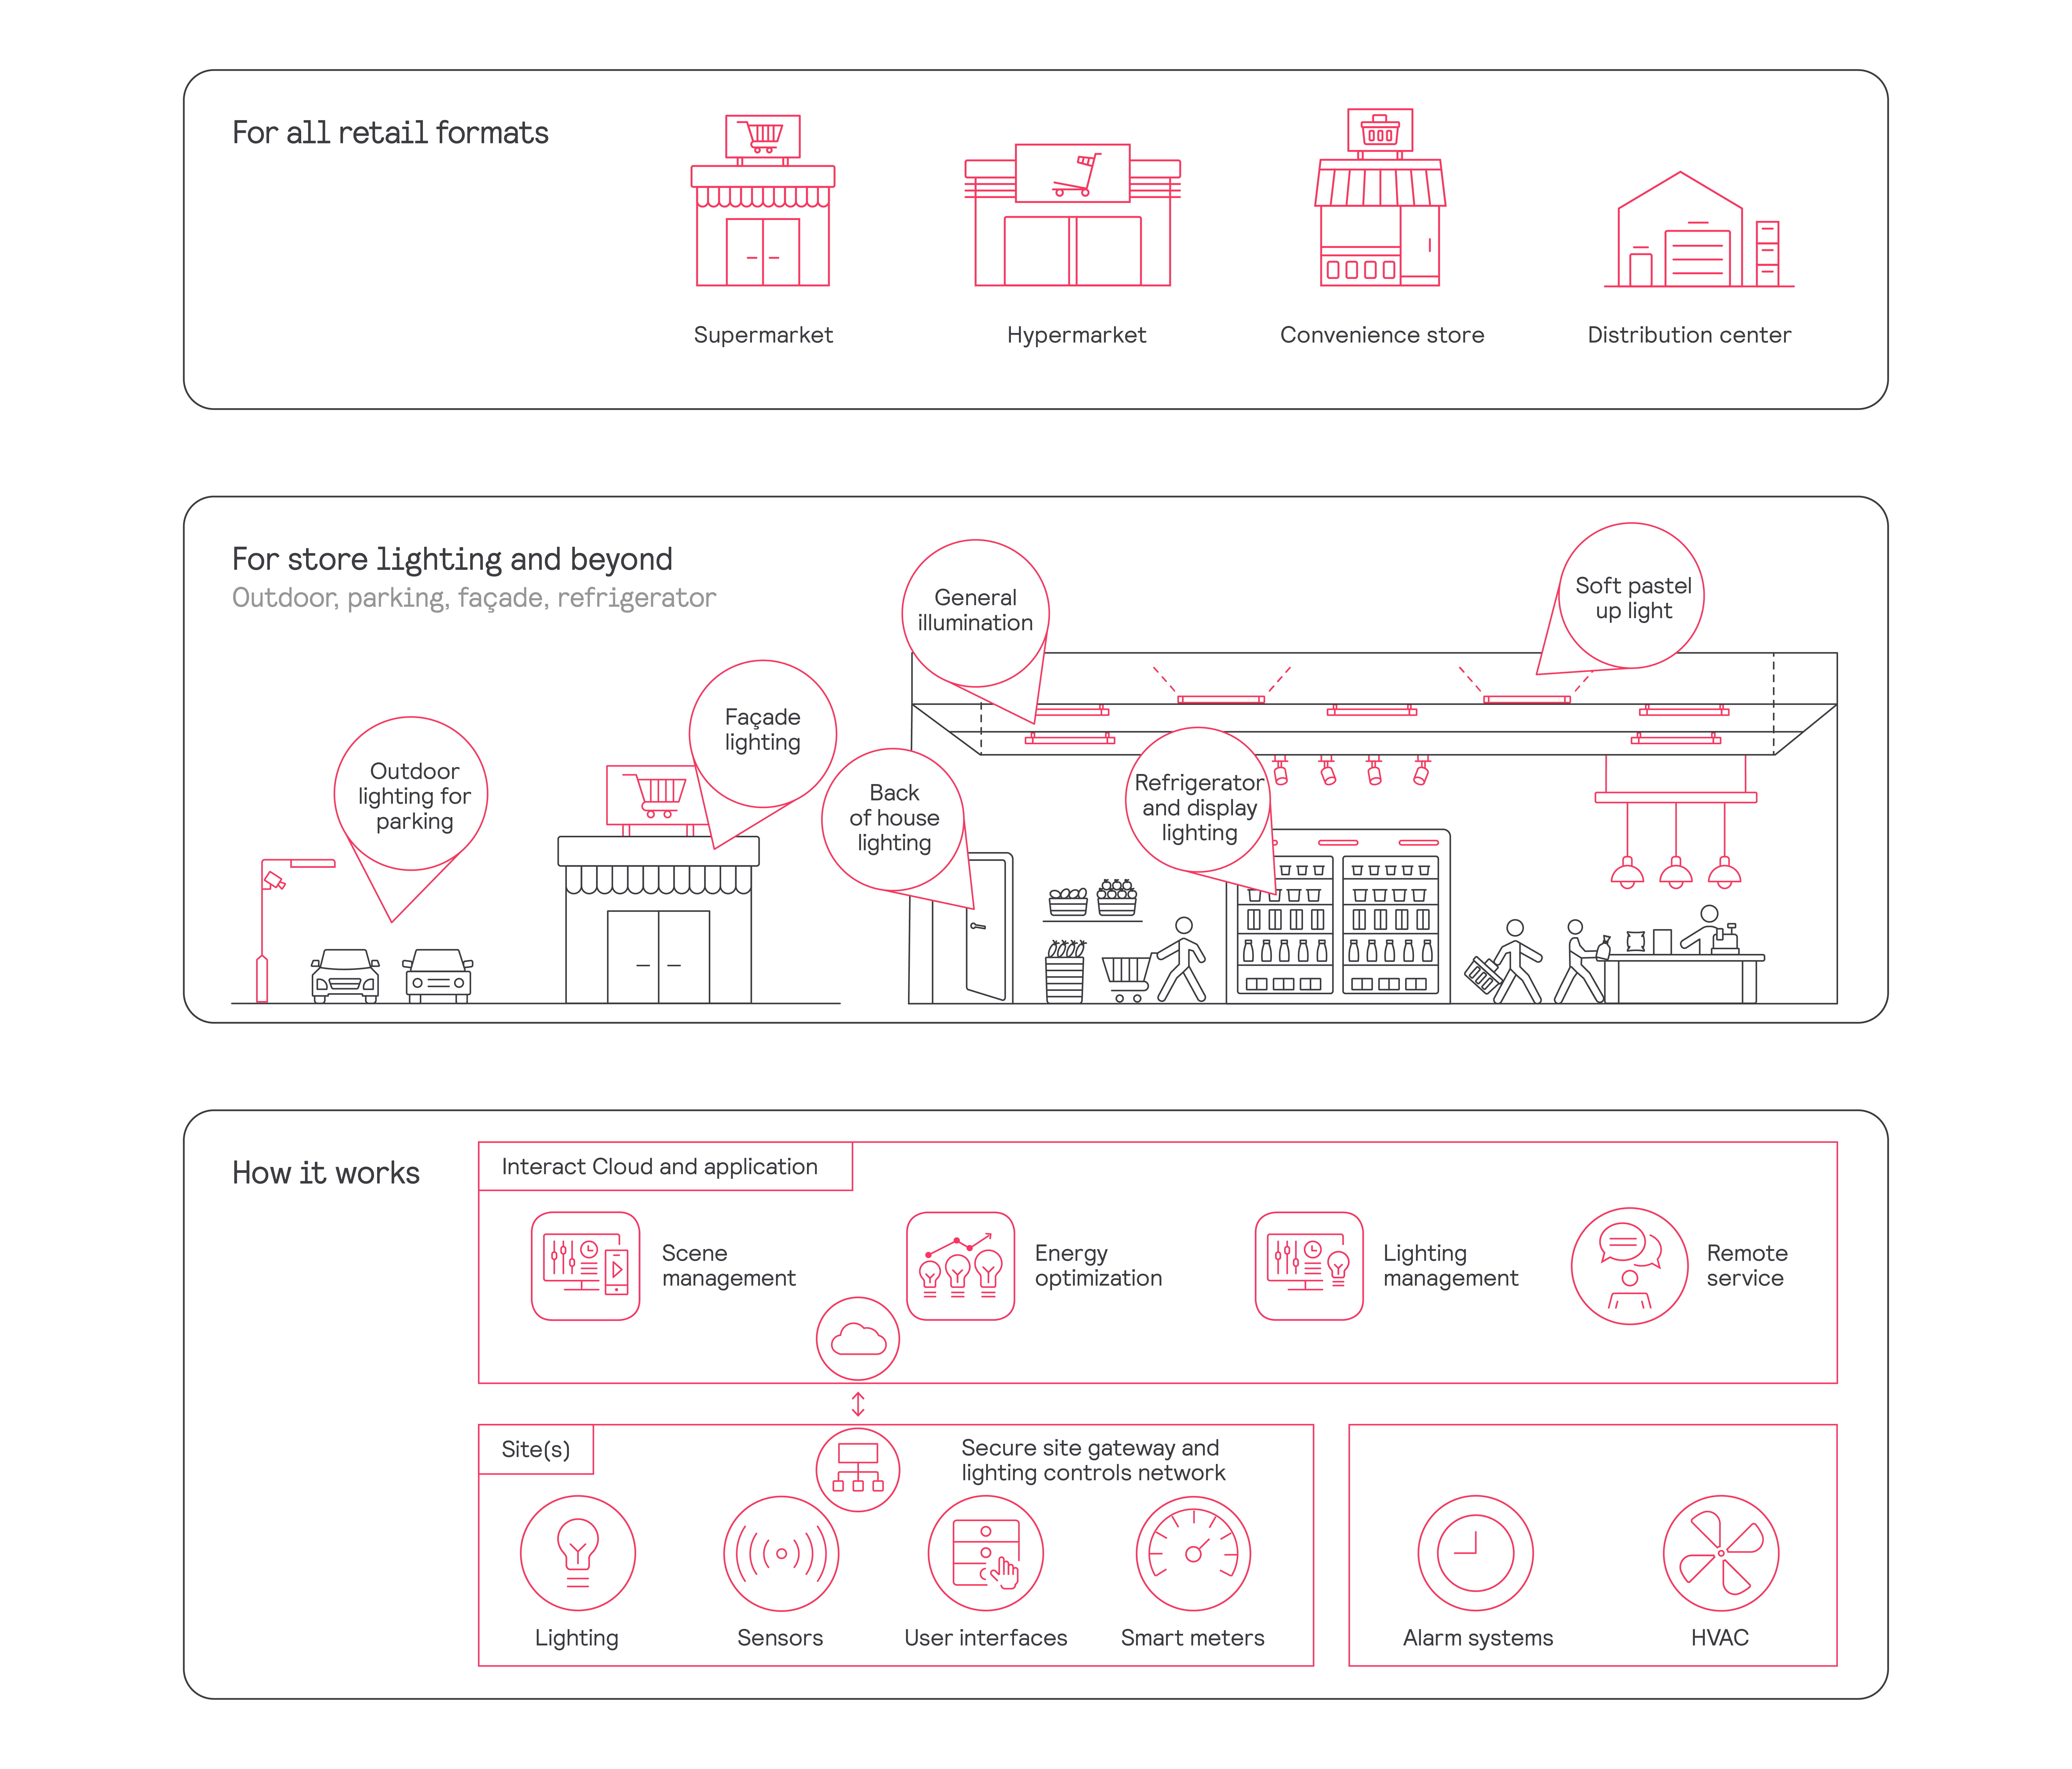 Interact Retail multisite architecture diagram